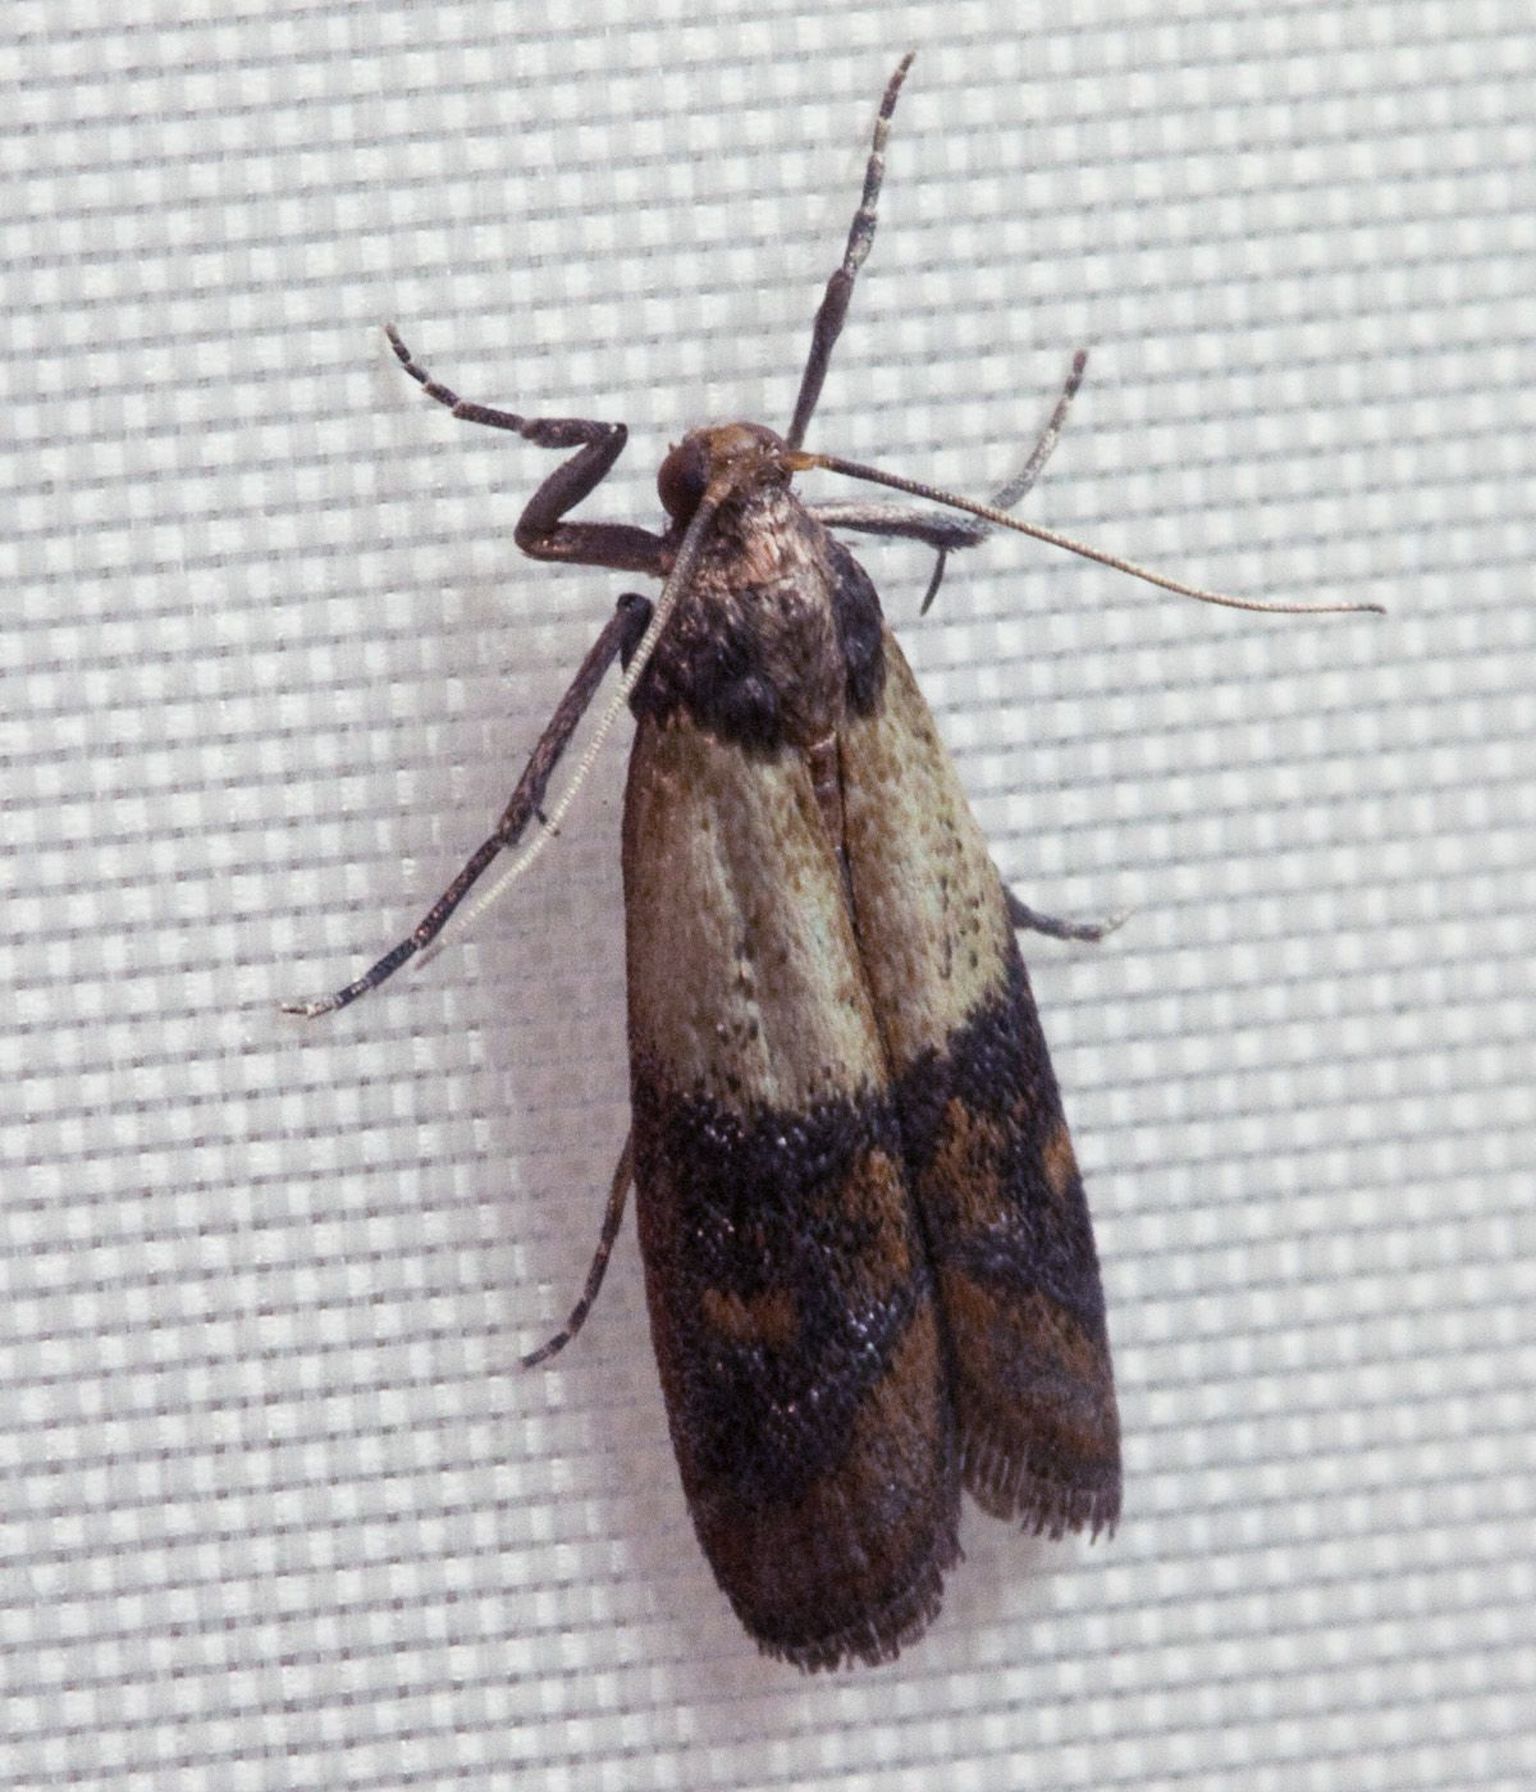 Lõuna-aidaleediku näol on tegu üsna levinud putukaga, kes kuivainetega koos koju satub.